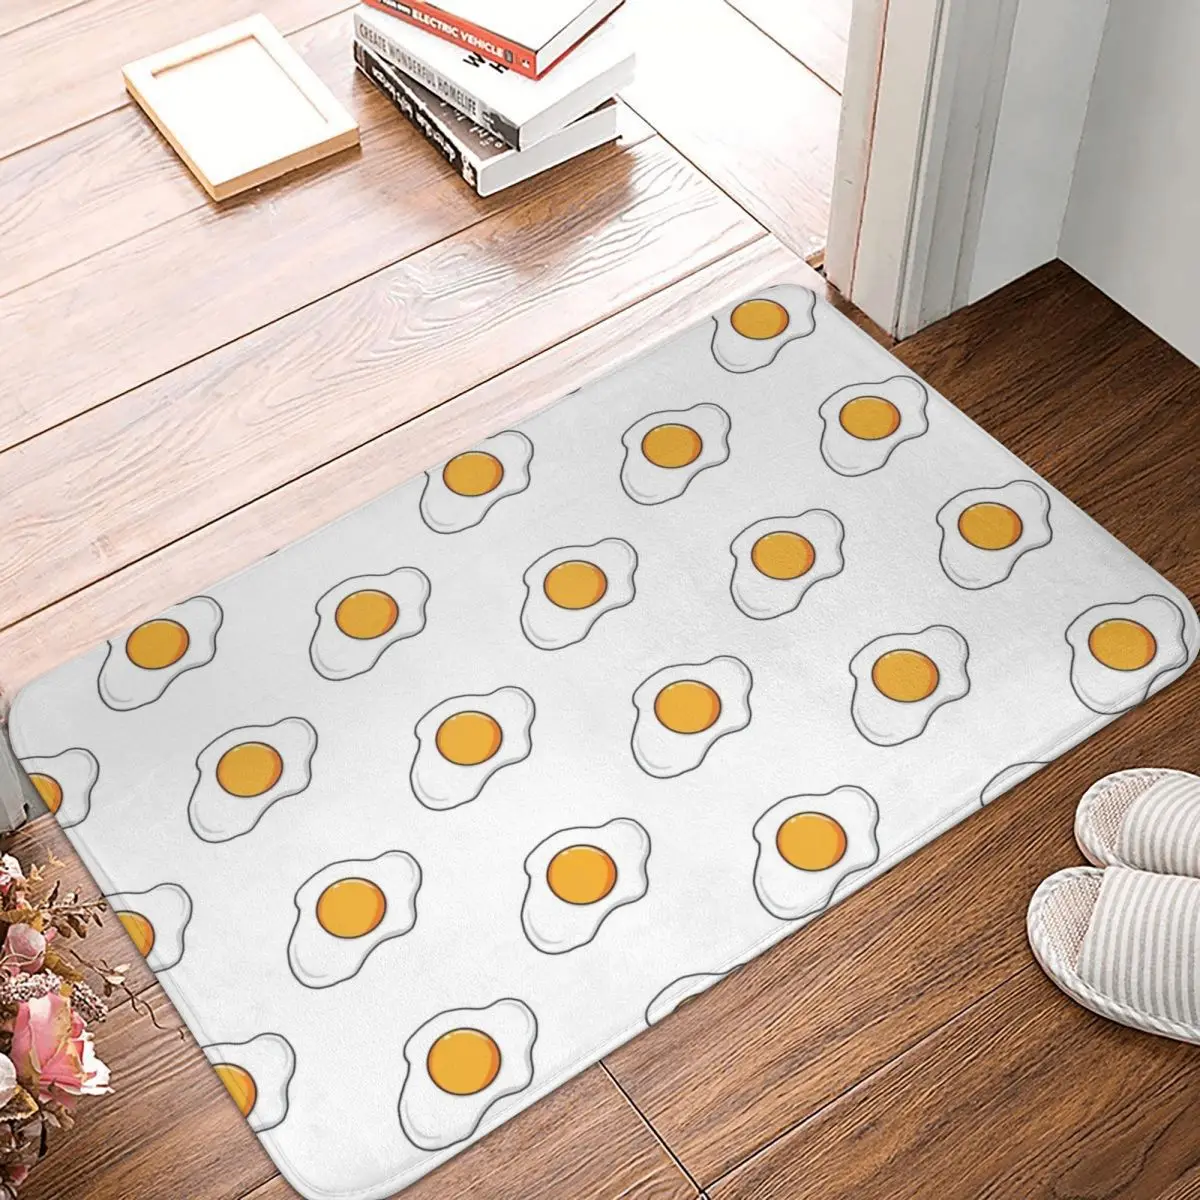 

Напольный коврик Sunny Side Egg из полиэстера, коврик для ног, нескользящий абсорбирующий коврик для кухни, спальни, балкона, мультяшный